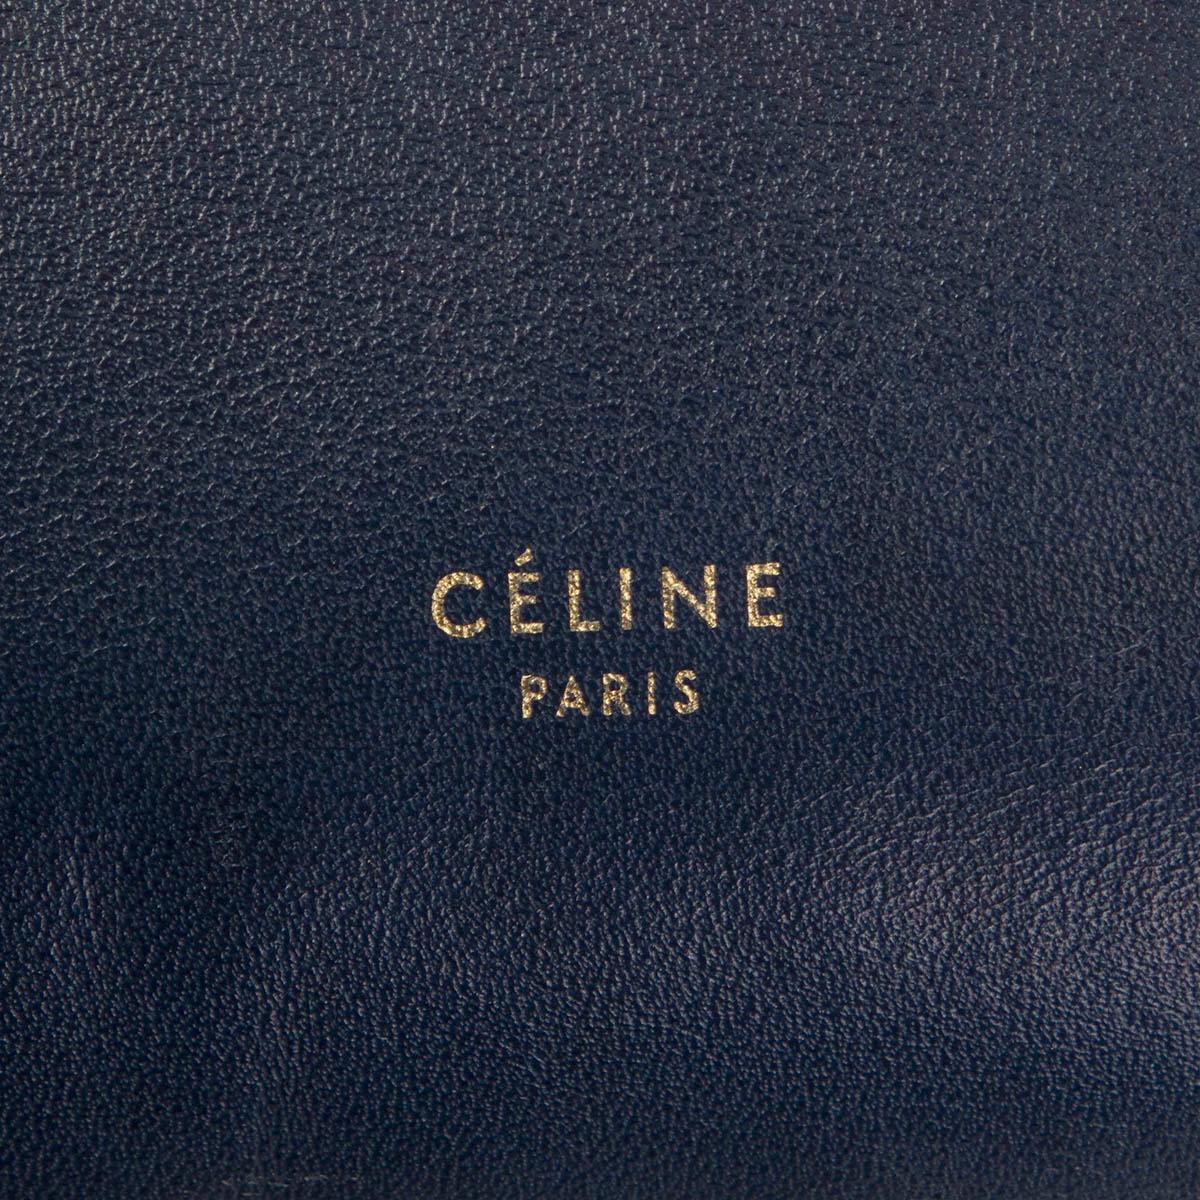 Black CELINE navy blue & cognac leather BI-COLOR BELT MEDIUM Shoulder Bag